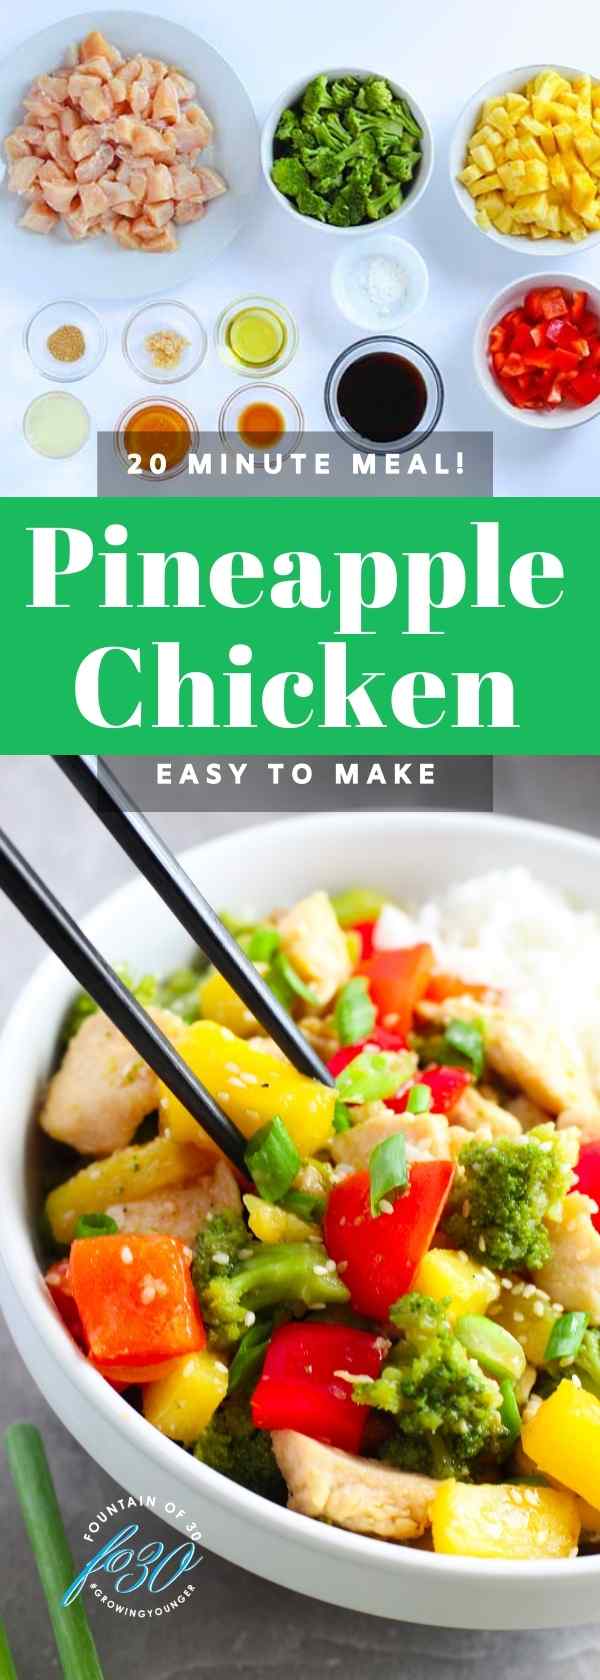 easy to make pineapple chicken fountainof30